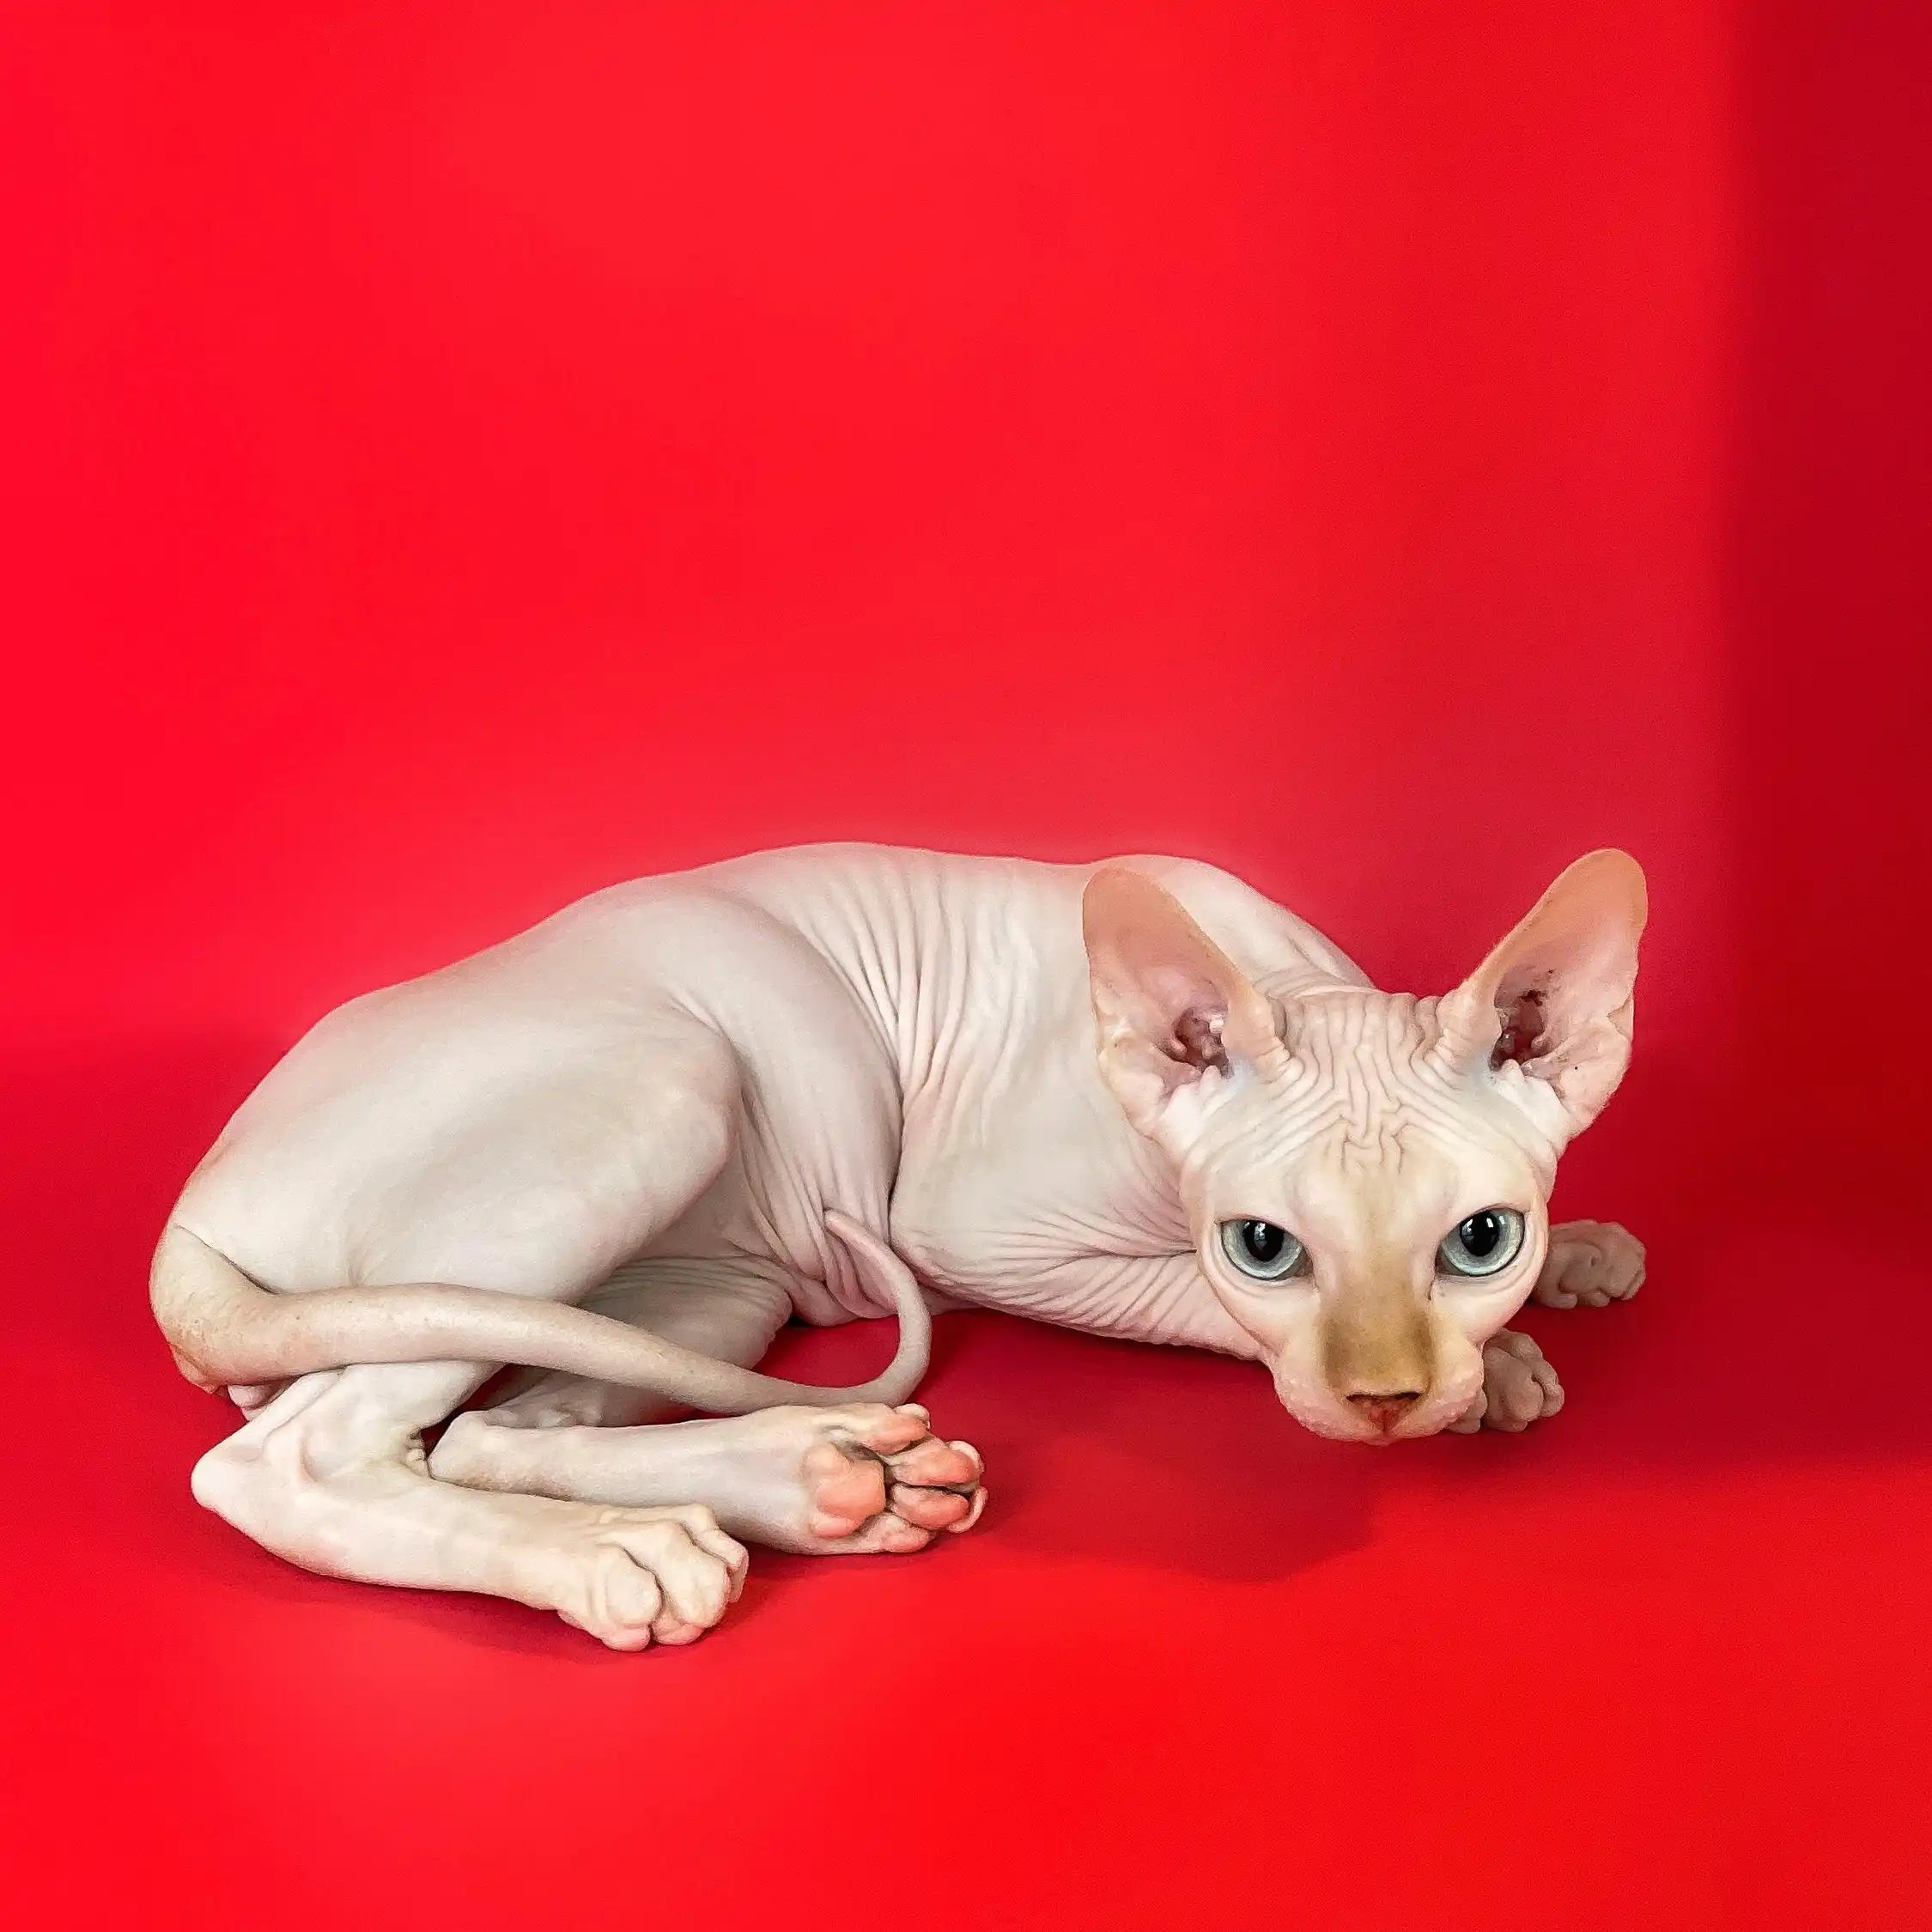 Sphynx Cats for Sale | Kittens For Oswaldo | Kitten